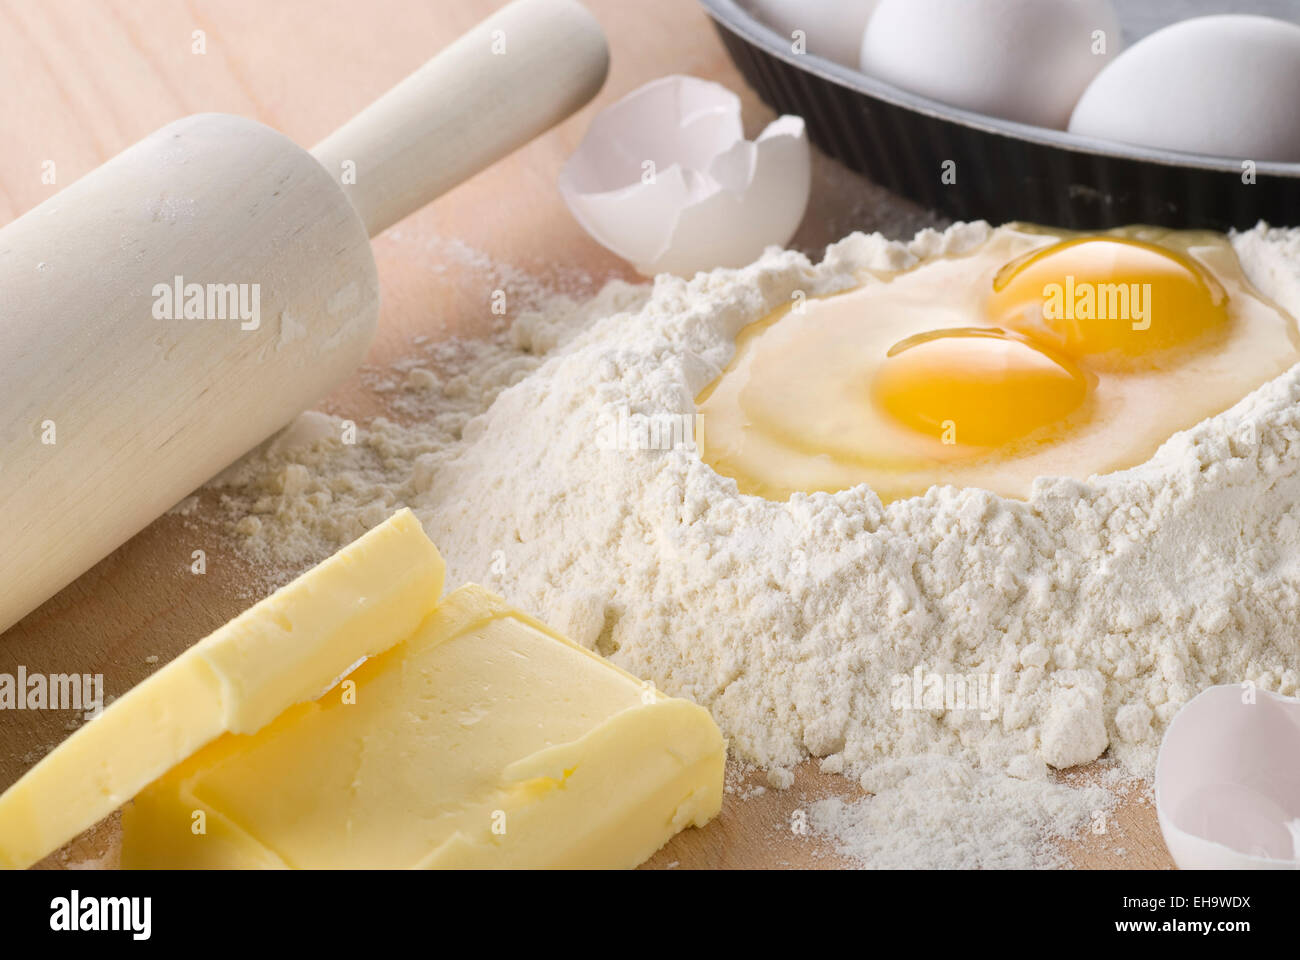 Ingredientes para hornear. Harina, huevo y mantequilla. Foto de stock